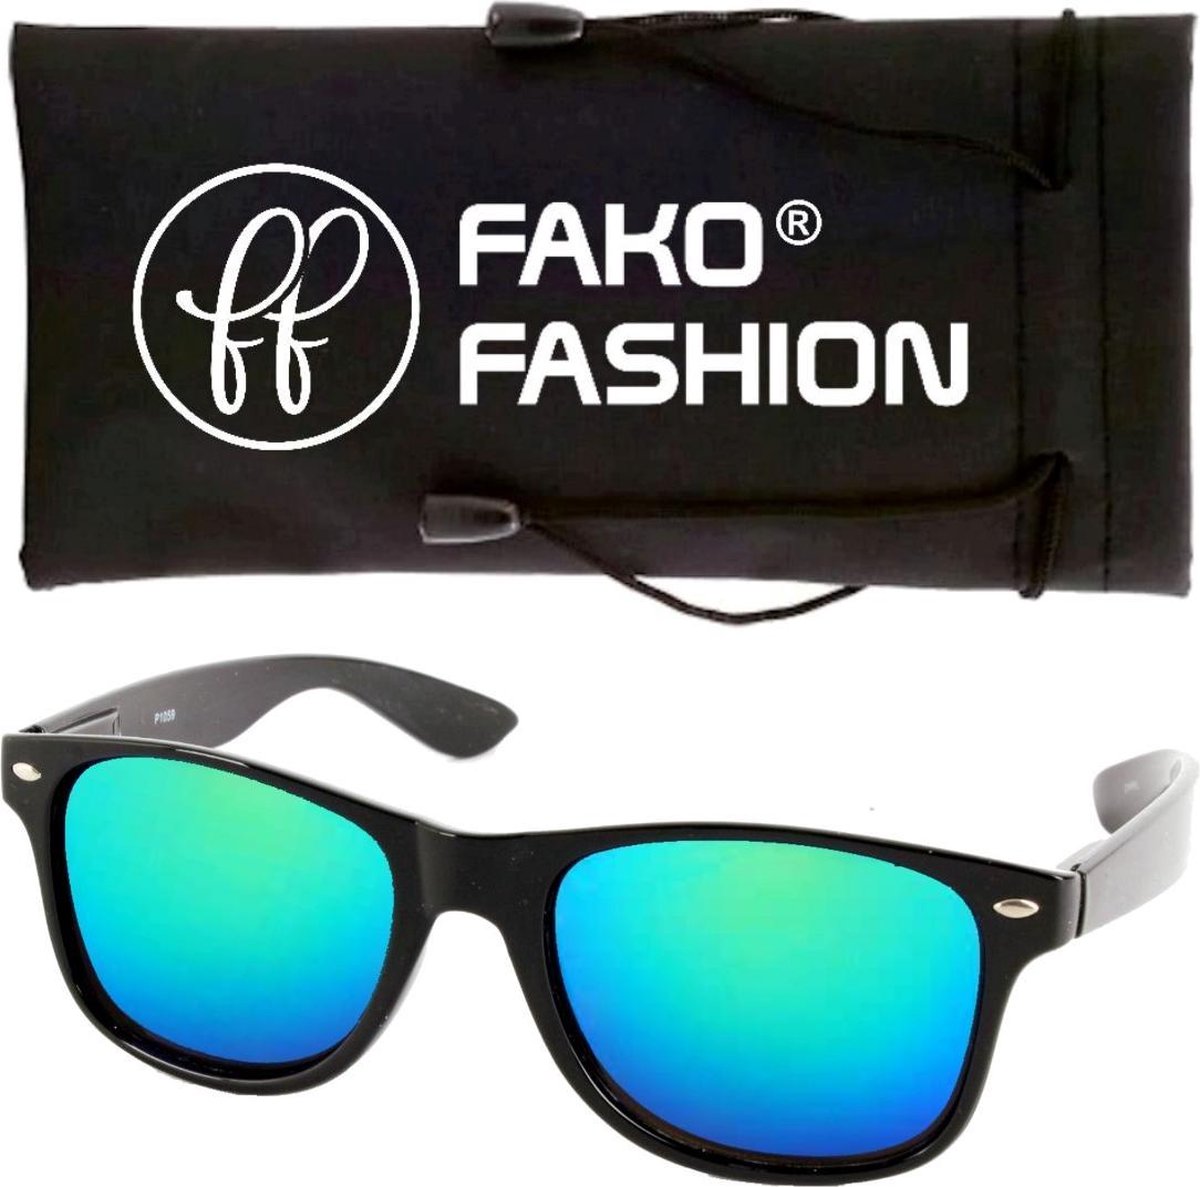 Fako Fashion® - Zonnebril - Zwart - Spiegel Blauw/Groen